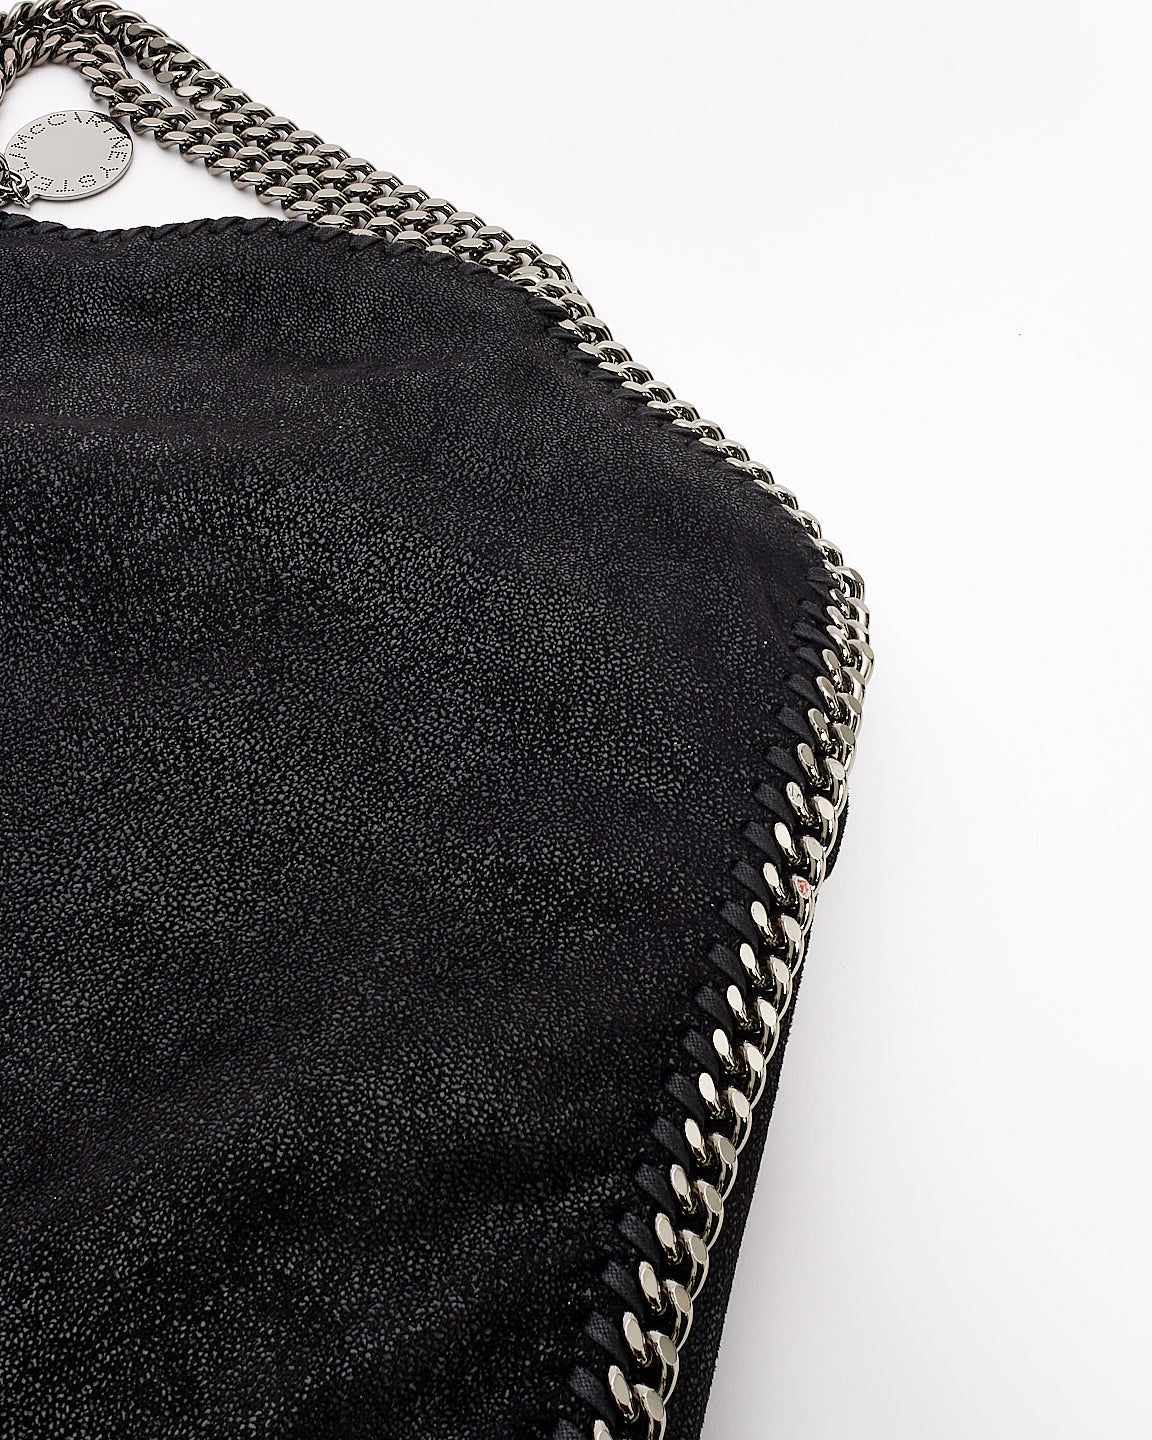 Stella McCartney Black Vegan Leather Falabella Fold Over Shoulder Bag